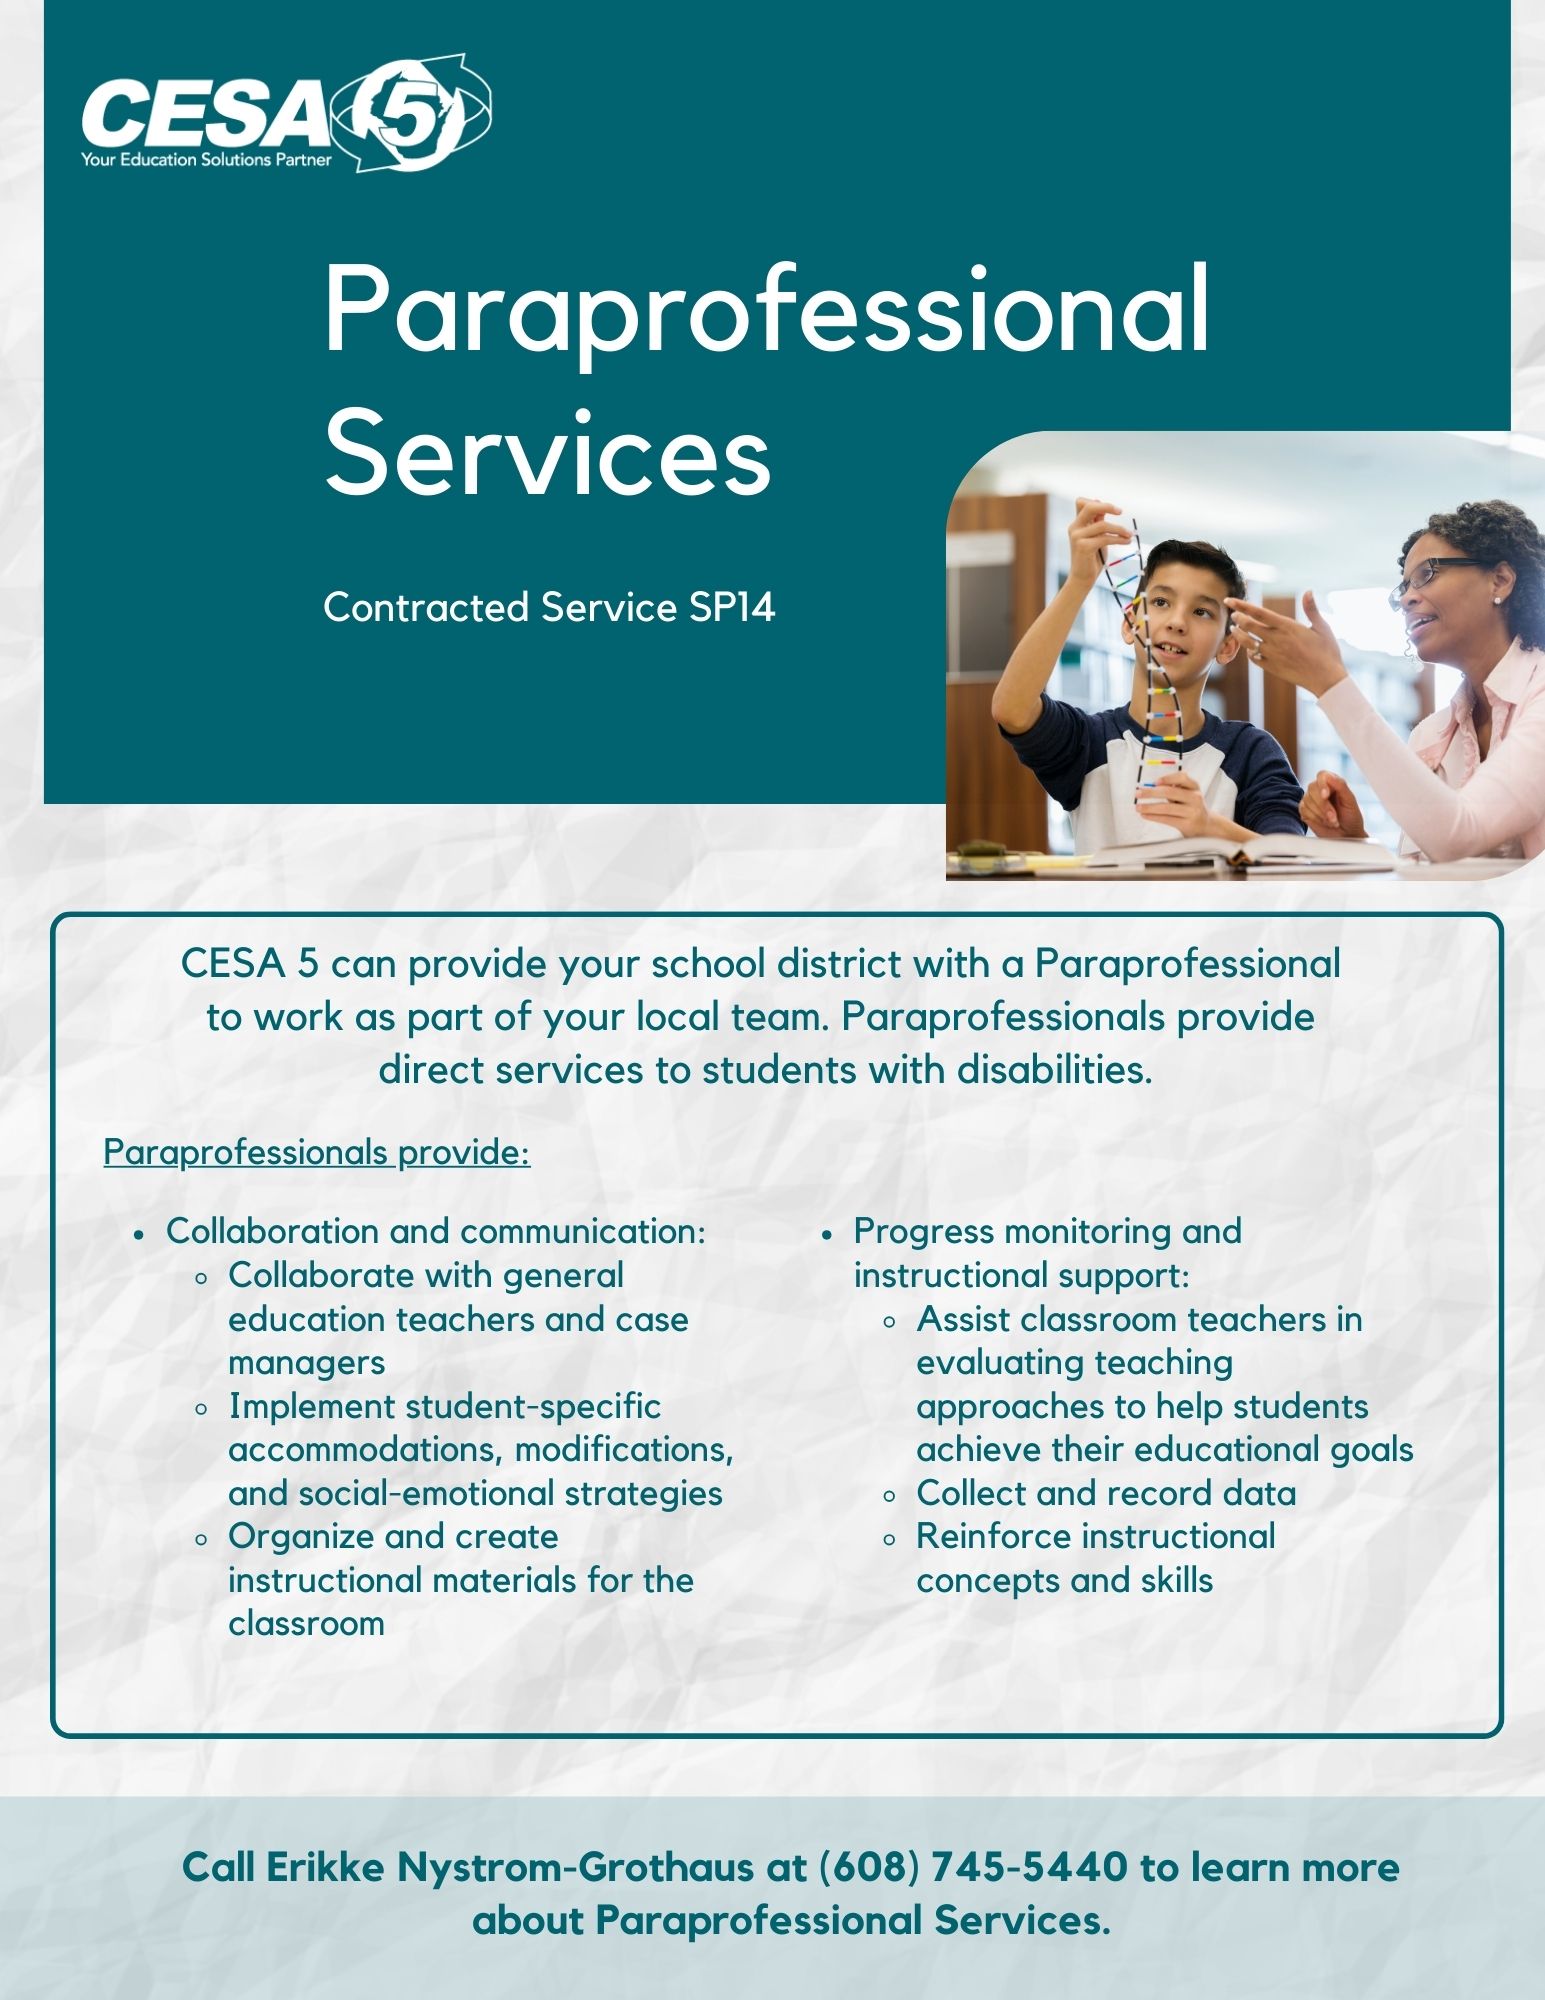 SP14 Paraprofessional Services